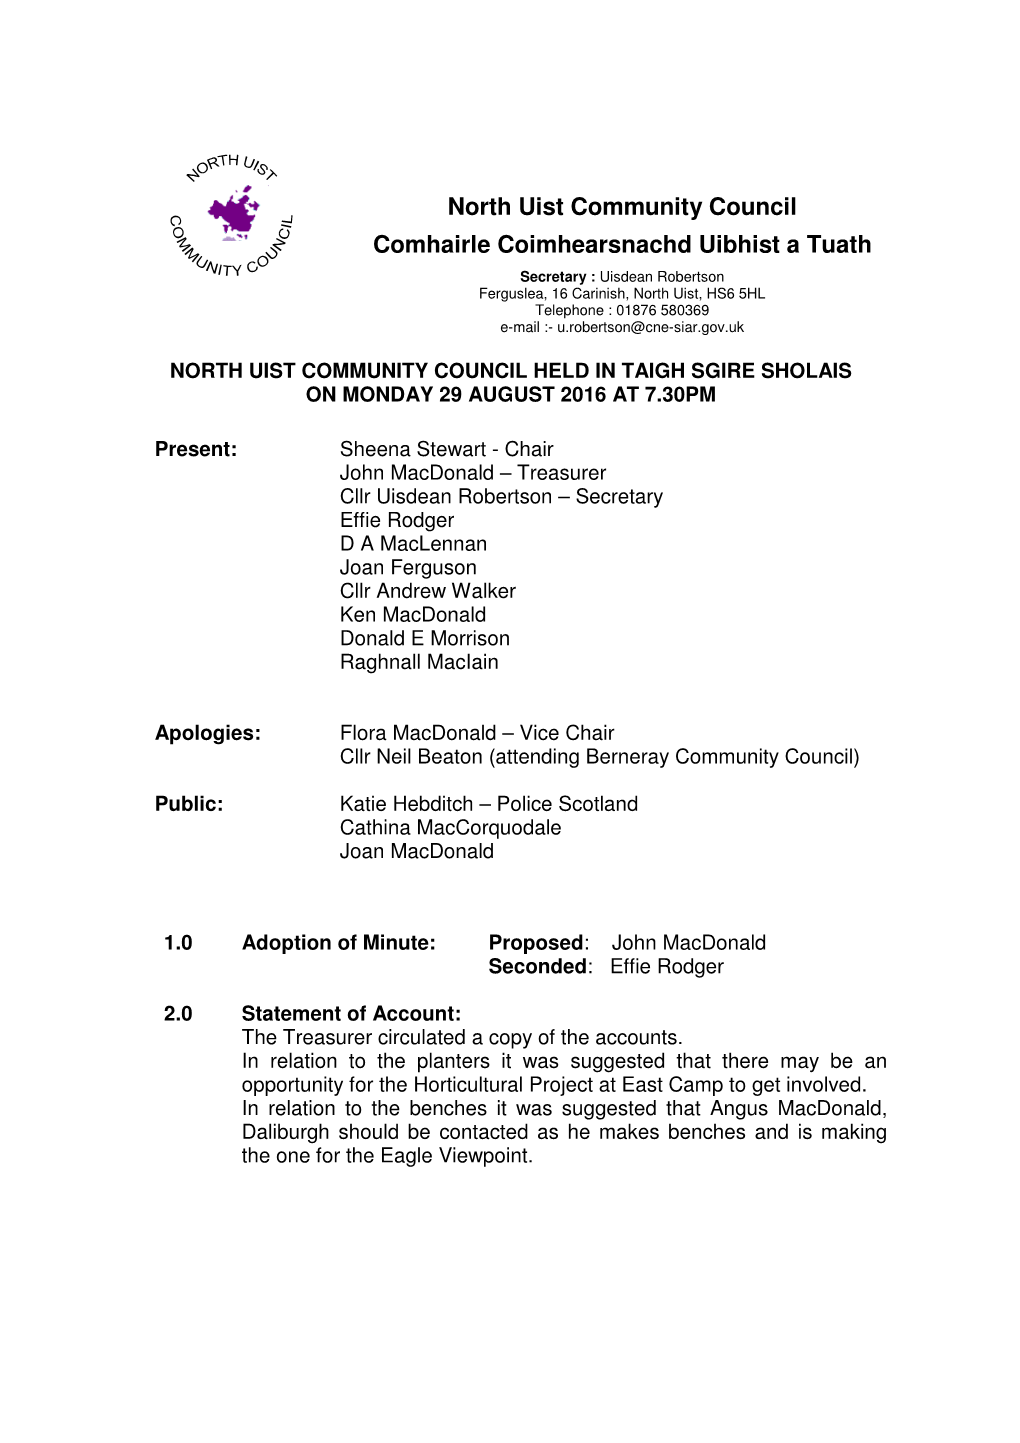 North Uist Community Council Comhairle Coimhearsnachd Uibhist